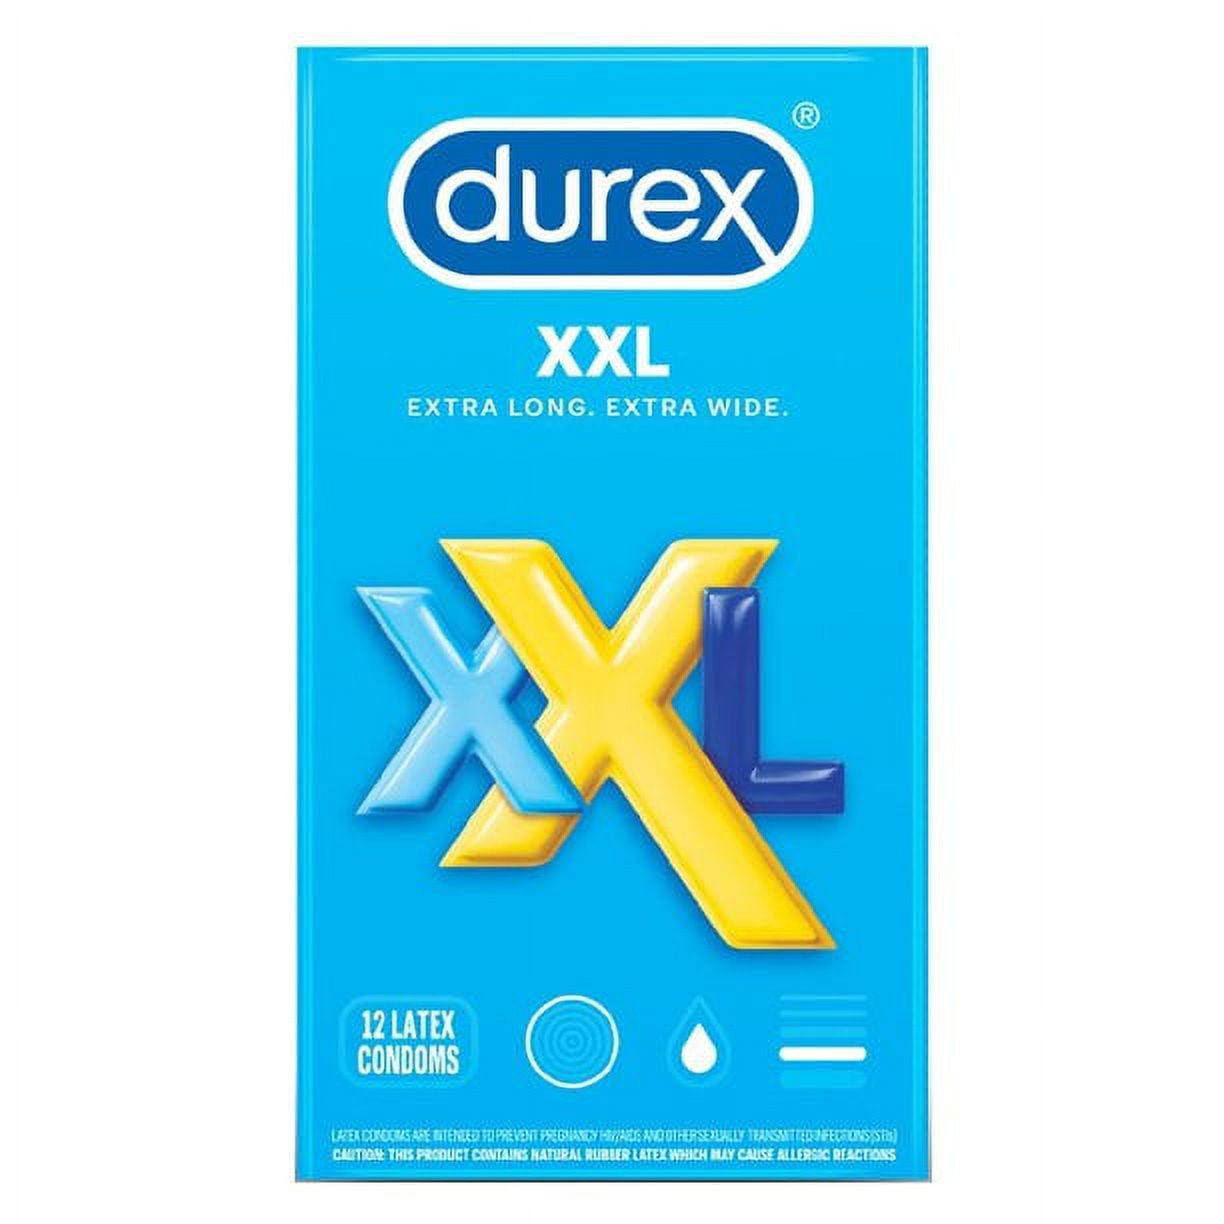 Buy Durex Xl Preservativos 12 U EN. Deals on Durex brand. Buy Now!!